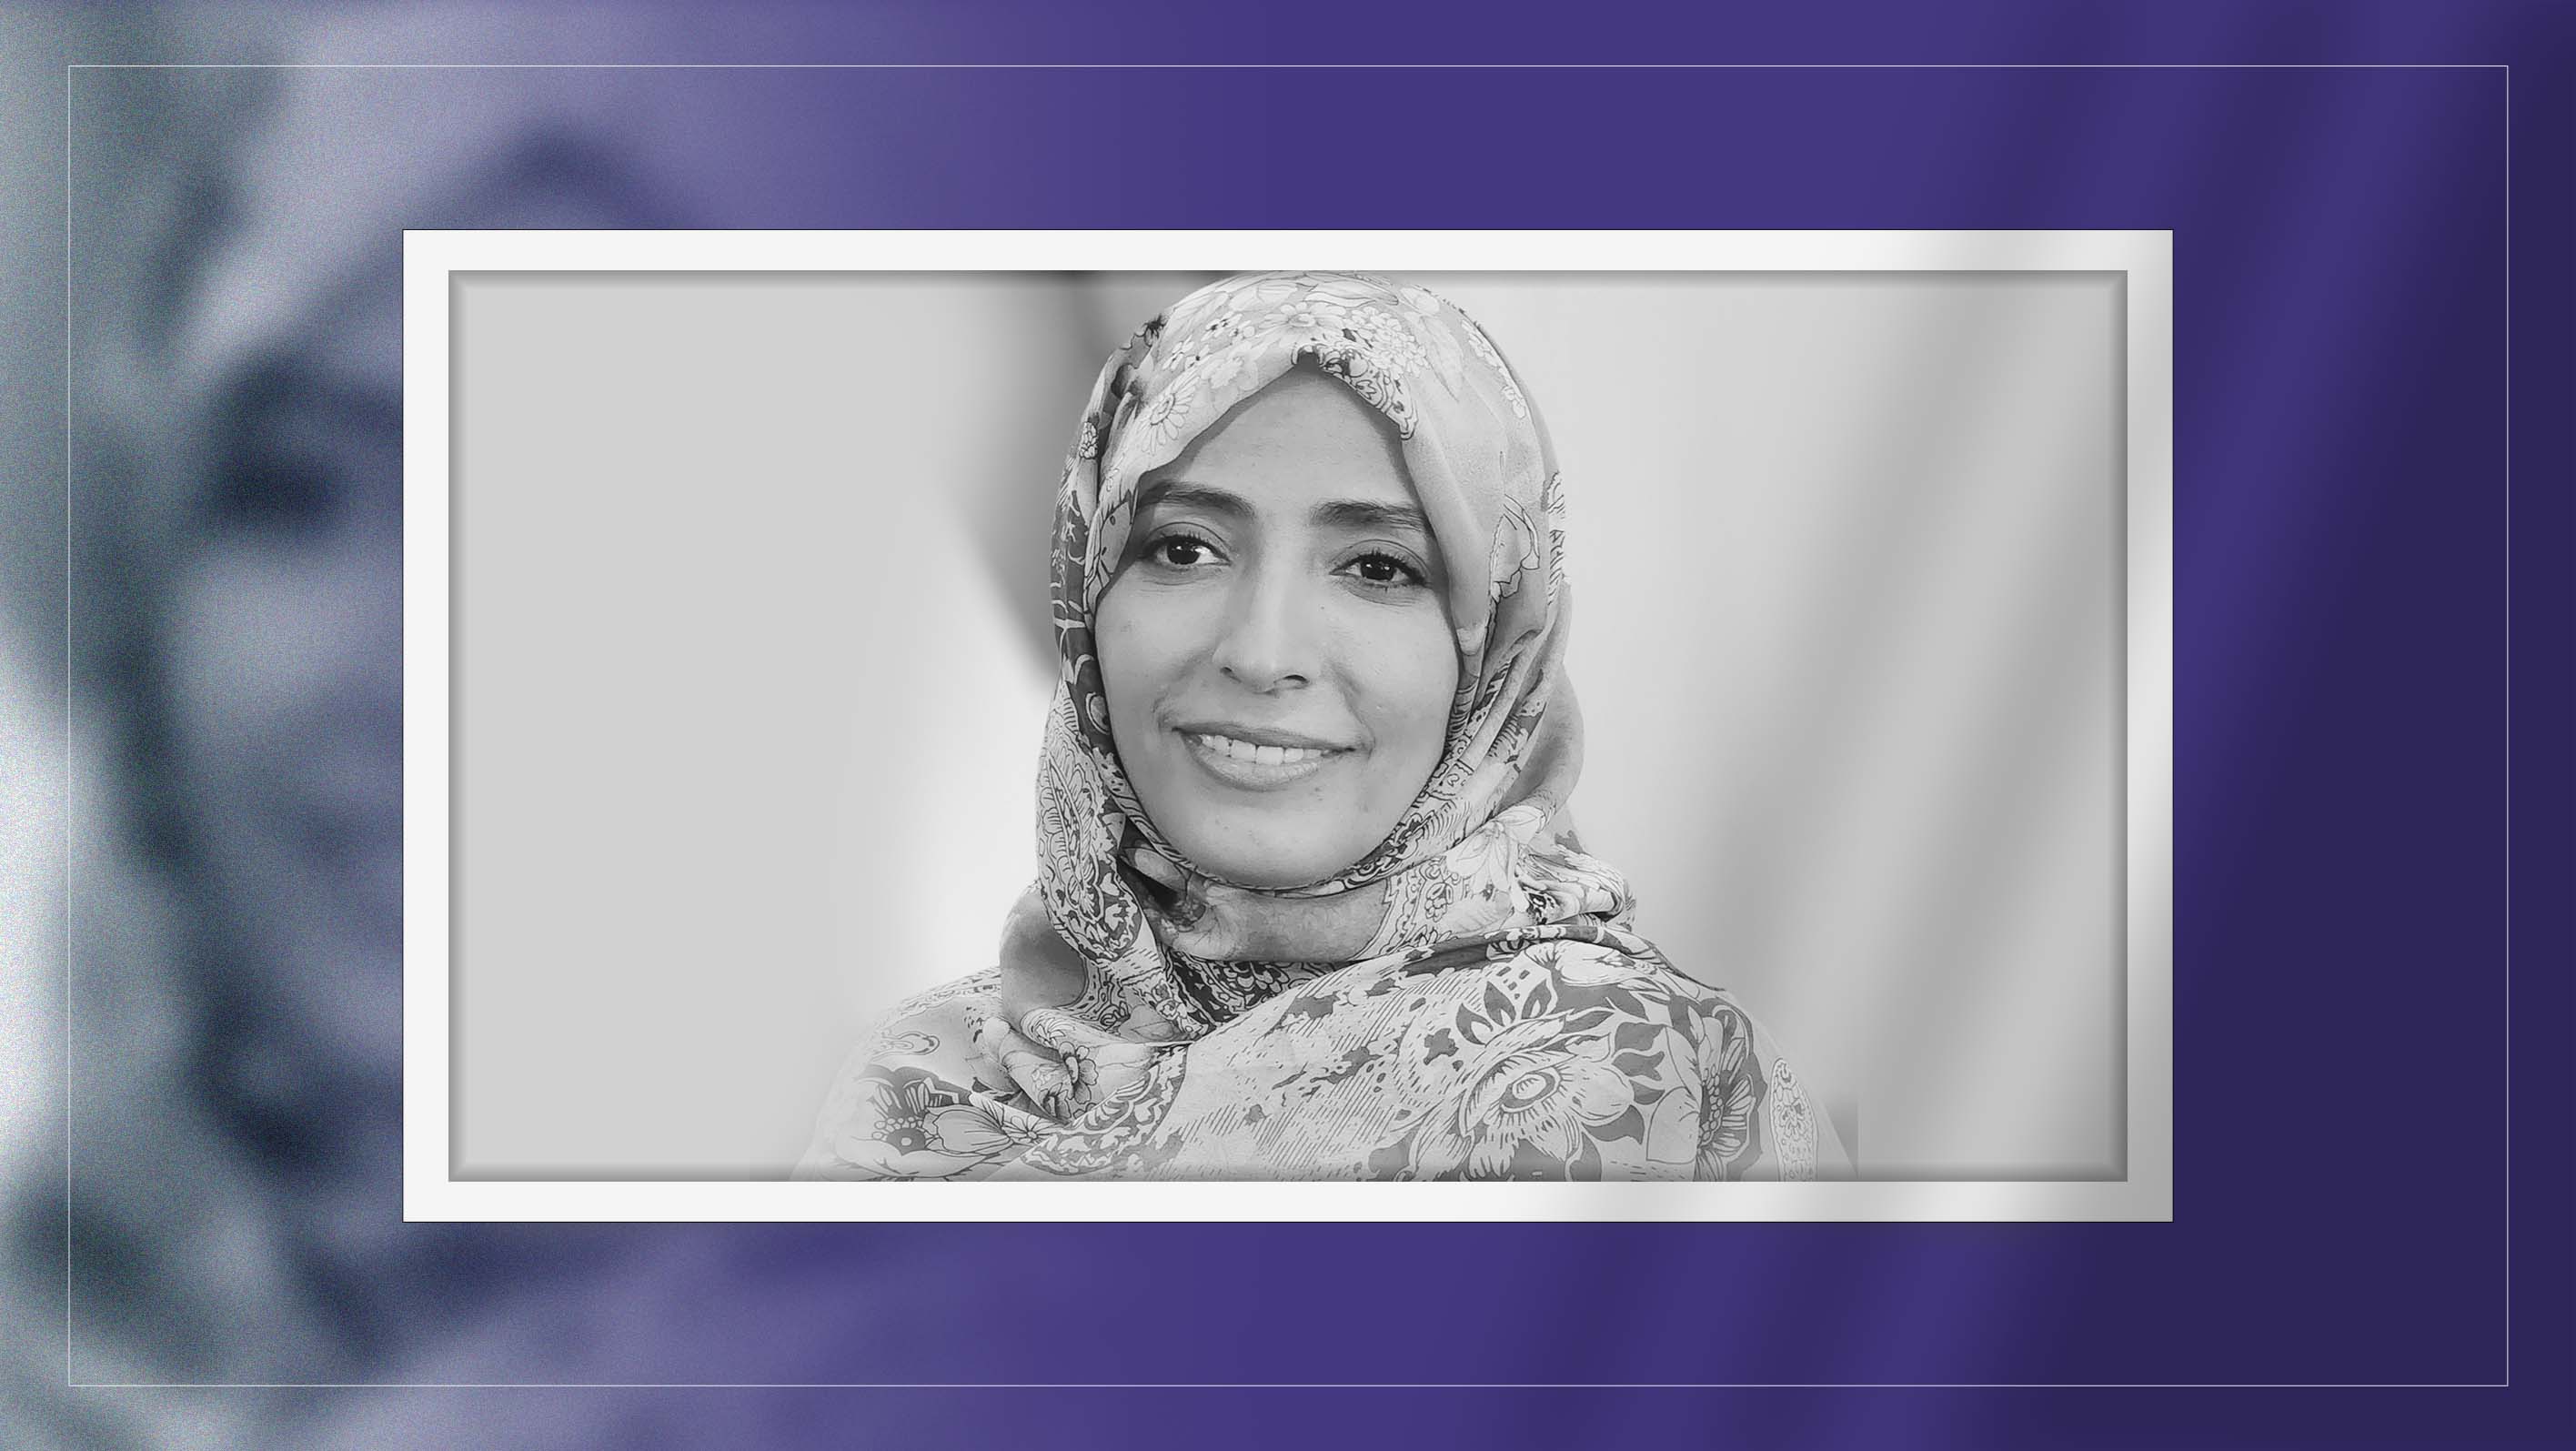 Tawakkol Karman to give speech at YPO EDGE 2022 in New York